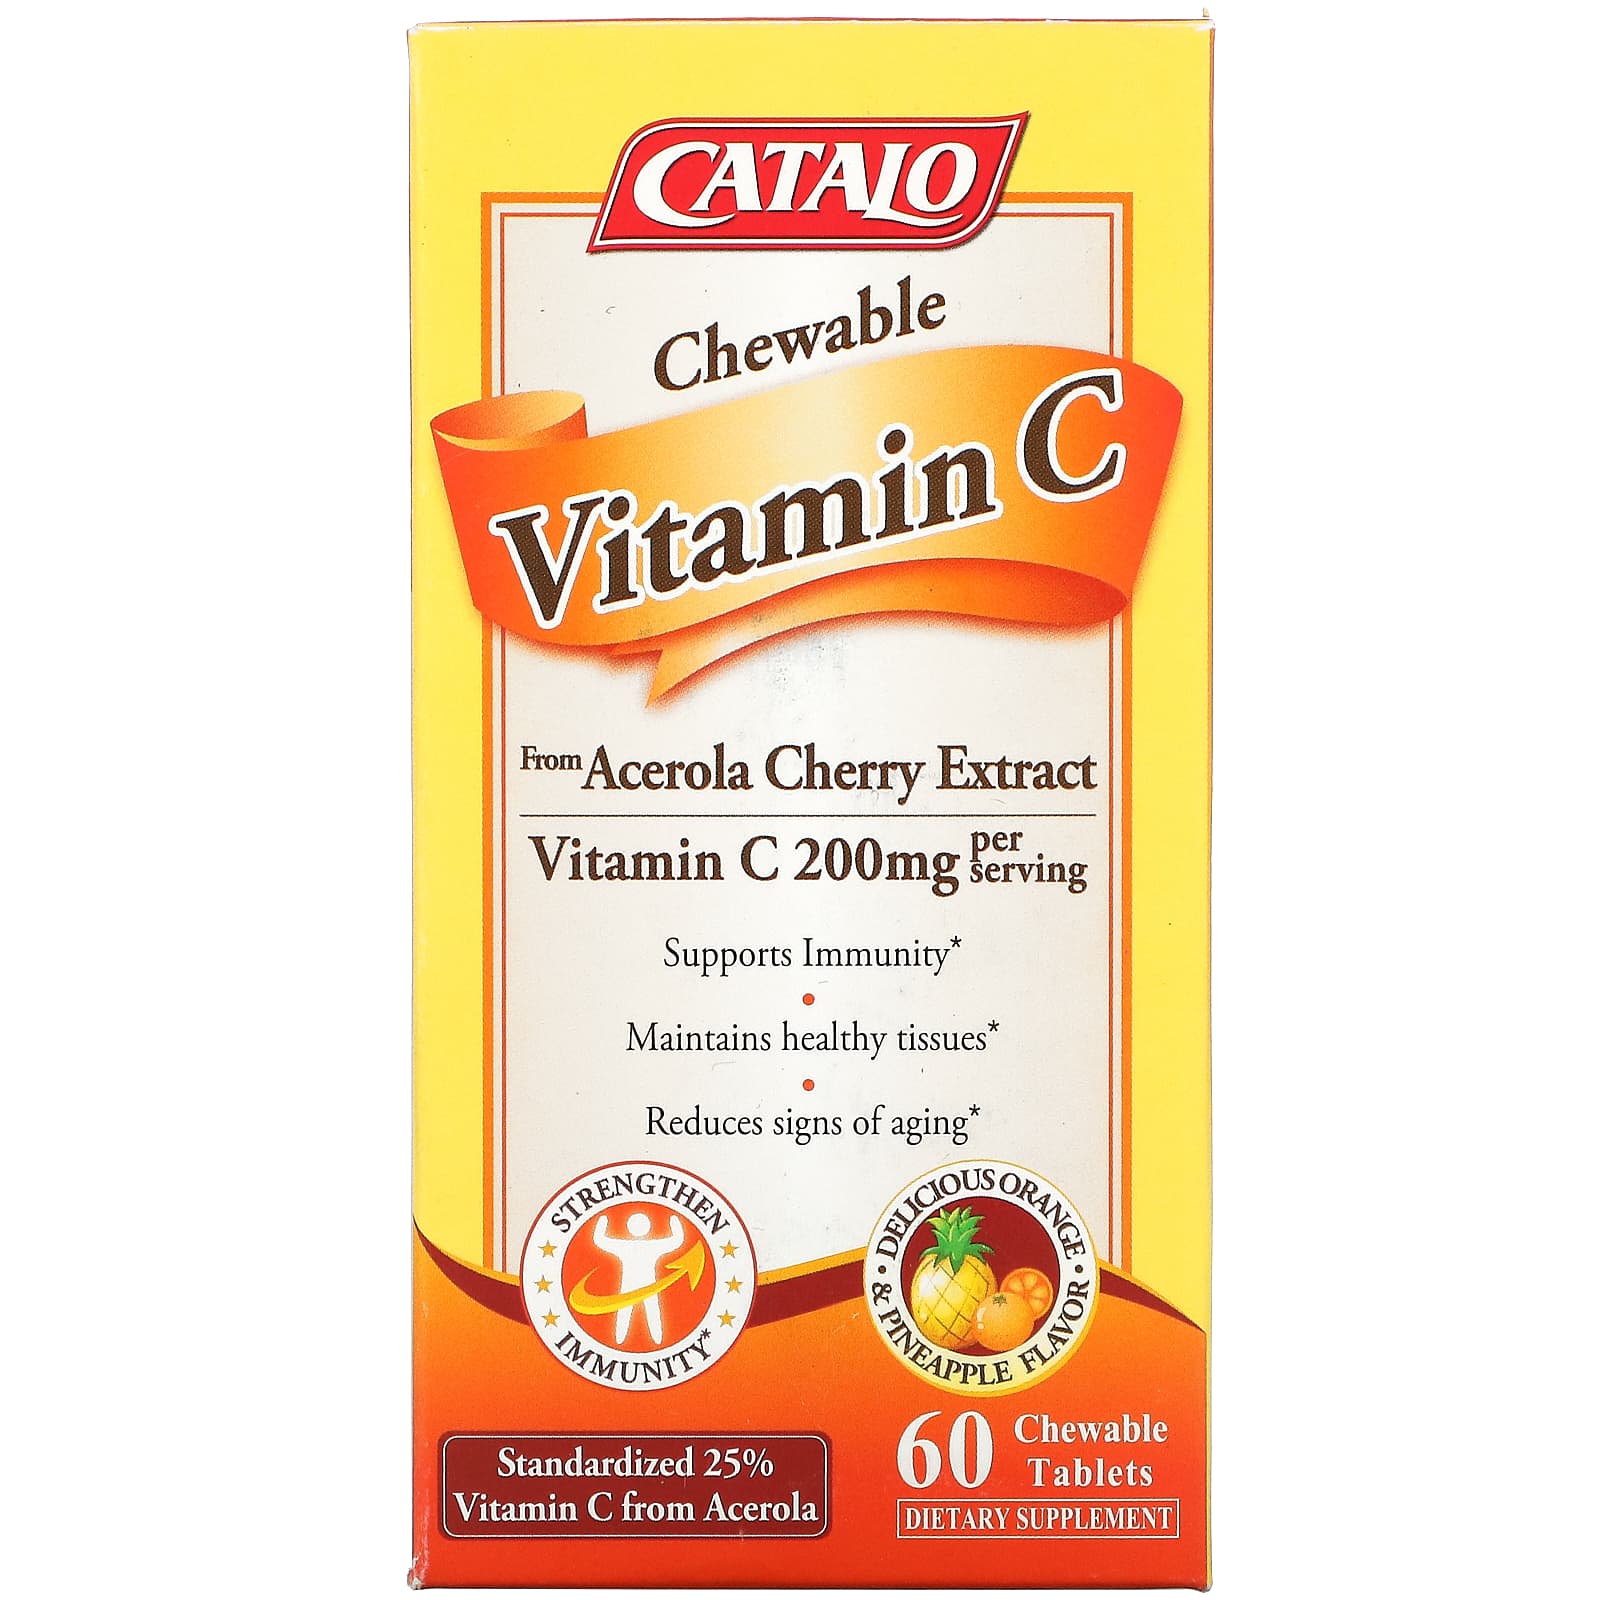 Жевательный Витамин C Catalo Naturals, апельсин и ананас, 60 жевательных таблеток swanson витамин c апельсин 60 жевательных таблеток